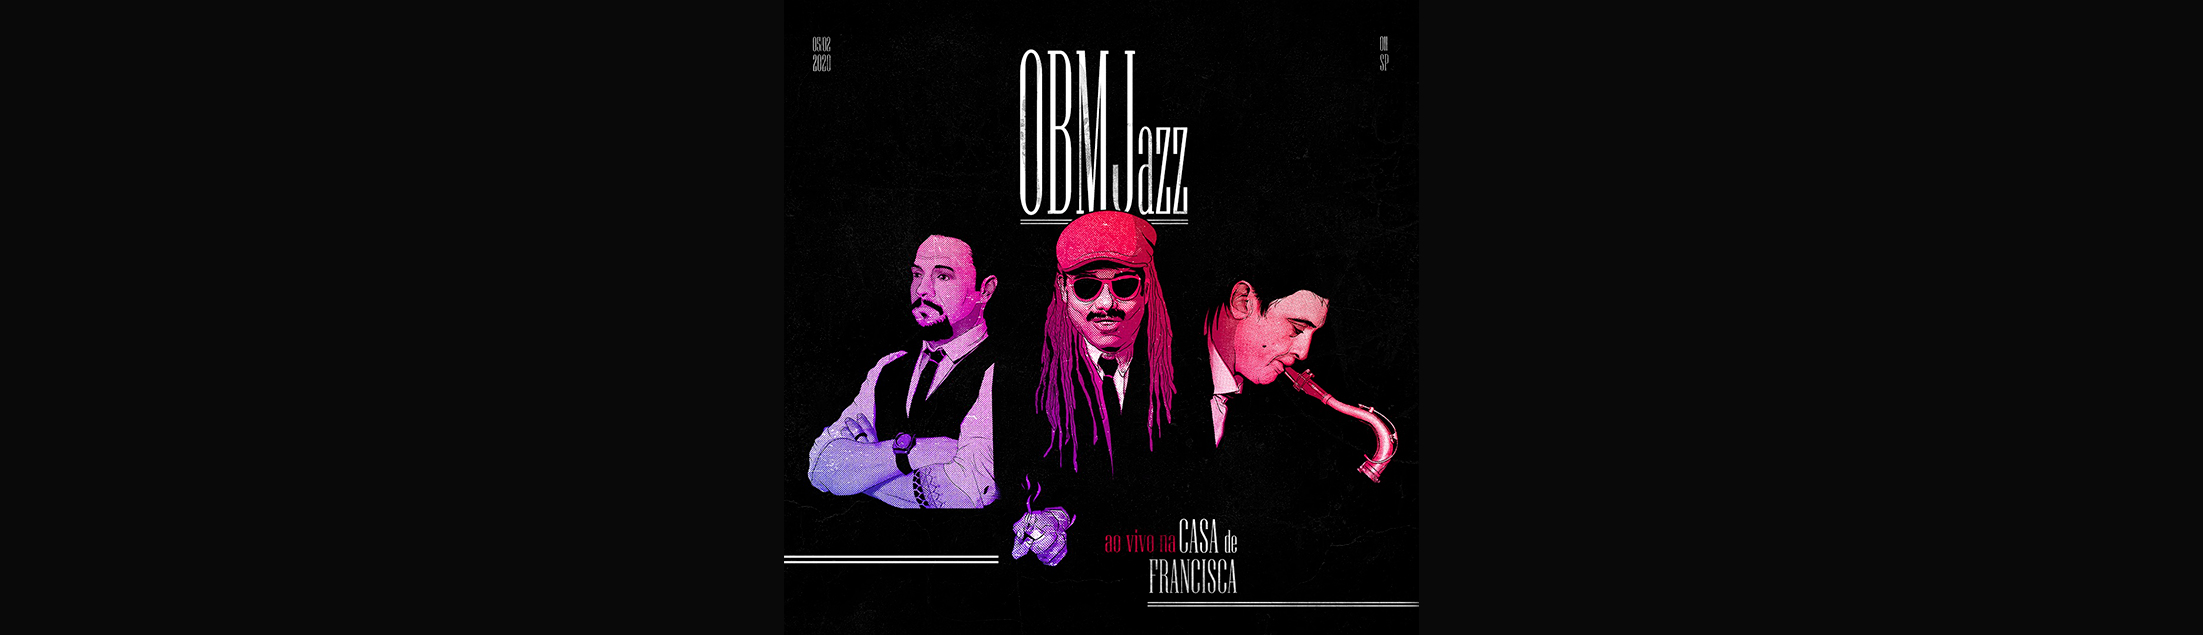 OBMJ lança versão de 'Soul Bossa Nova' clássico de Quincy Jones